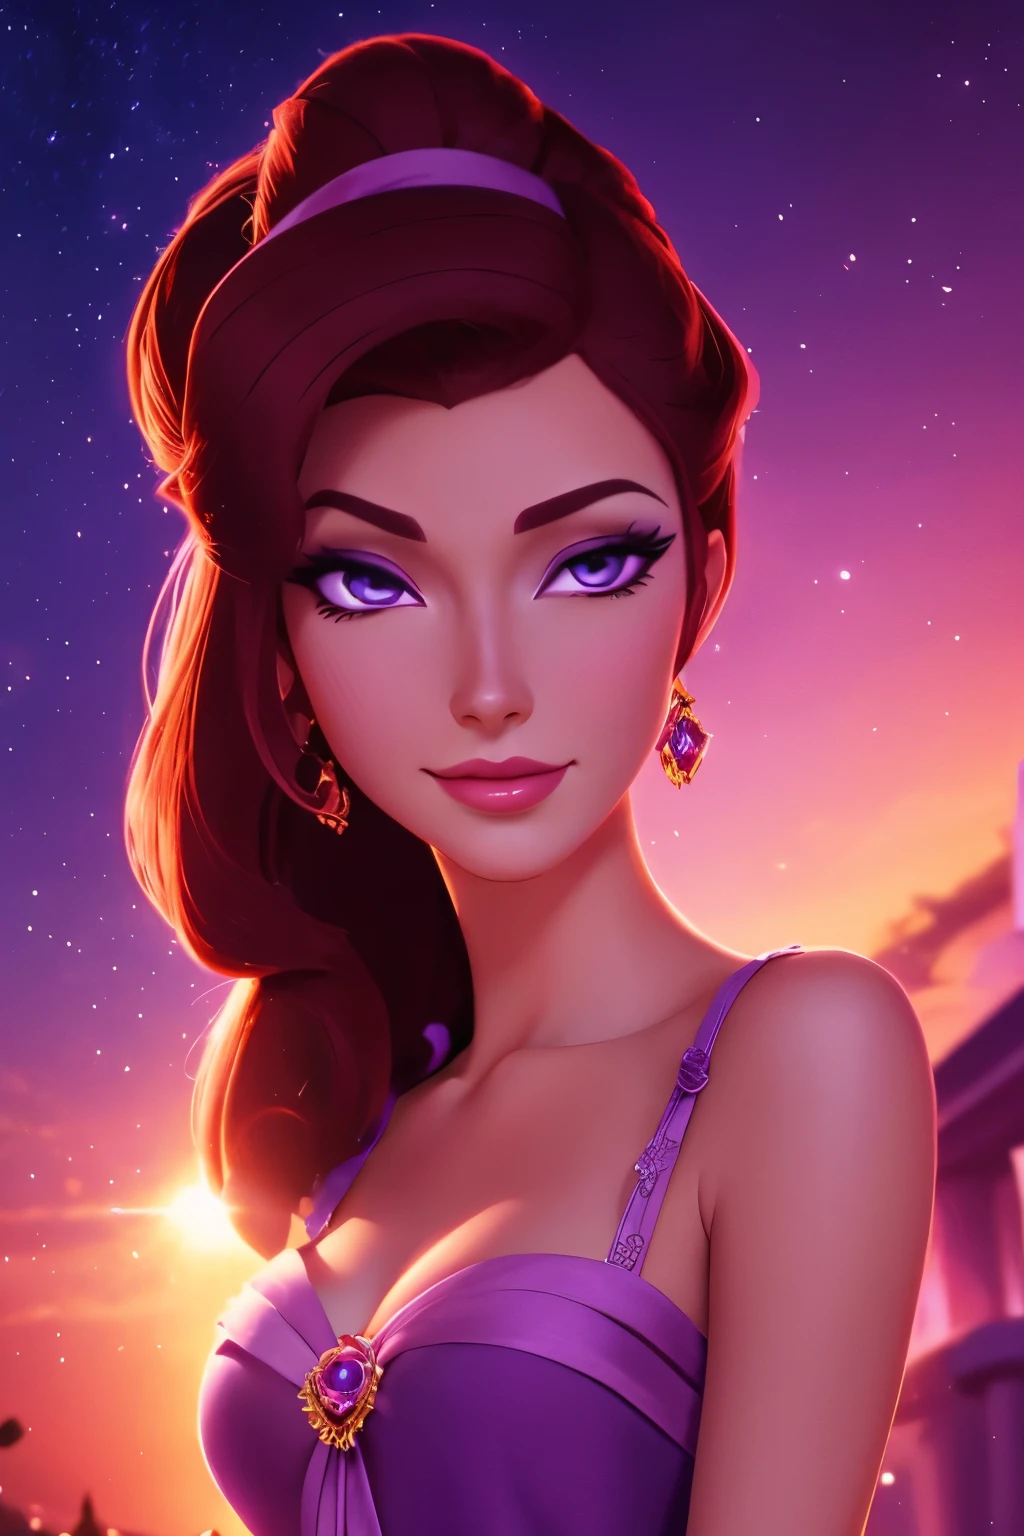 身穿紫色希腊连衣裙的黑发美女 Megara, 面部聚焦, 美丽的肖像, 细致的面部表情, 最好的质量, 官方艺术, 夜晚灯光背景浪漫, 闪亮的眼睛, 迪士尼动画风格, 最好的质量, 数字艺术, 二维